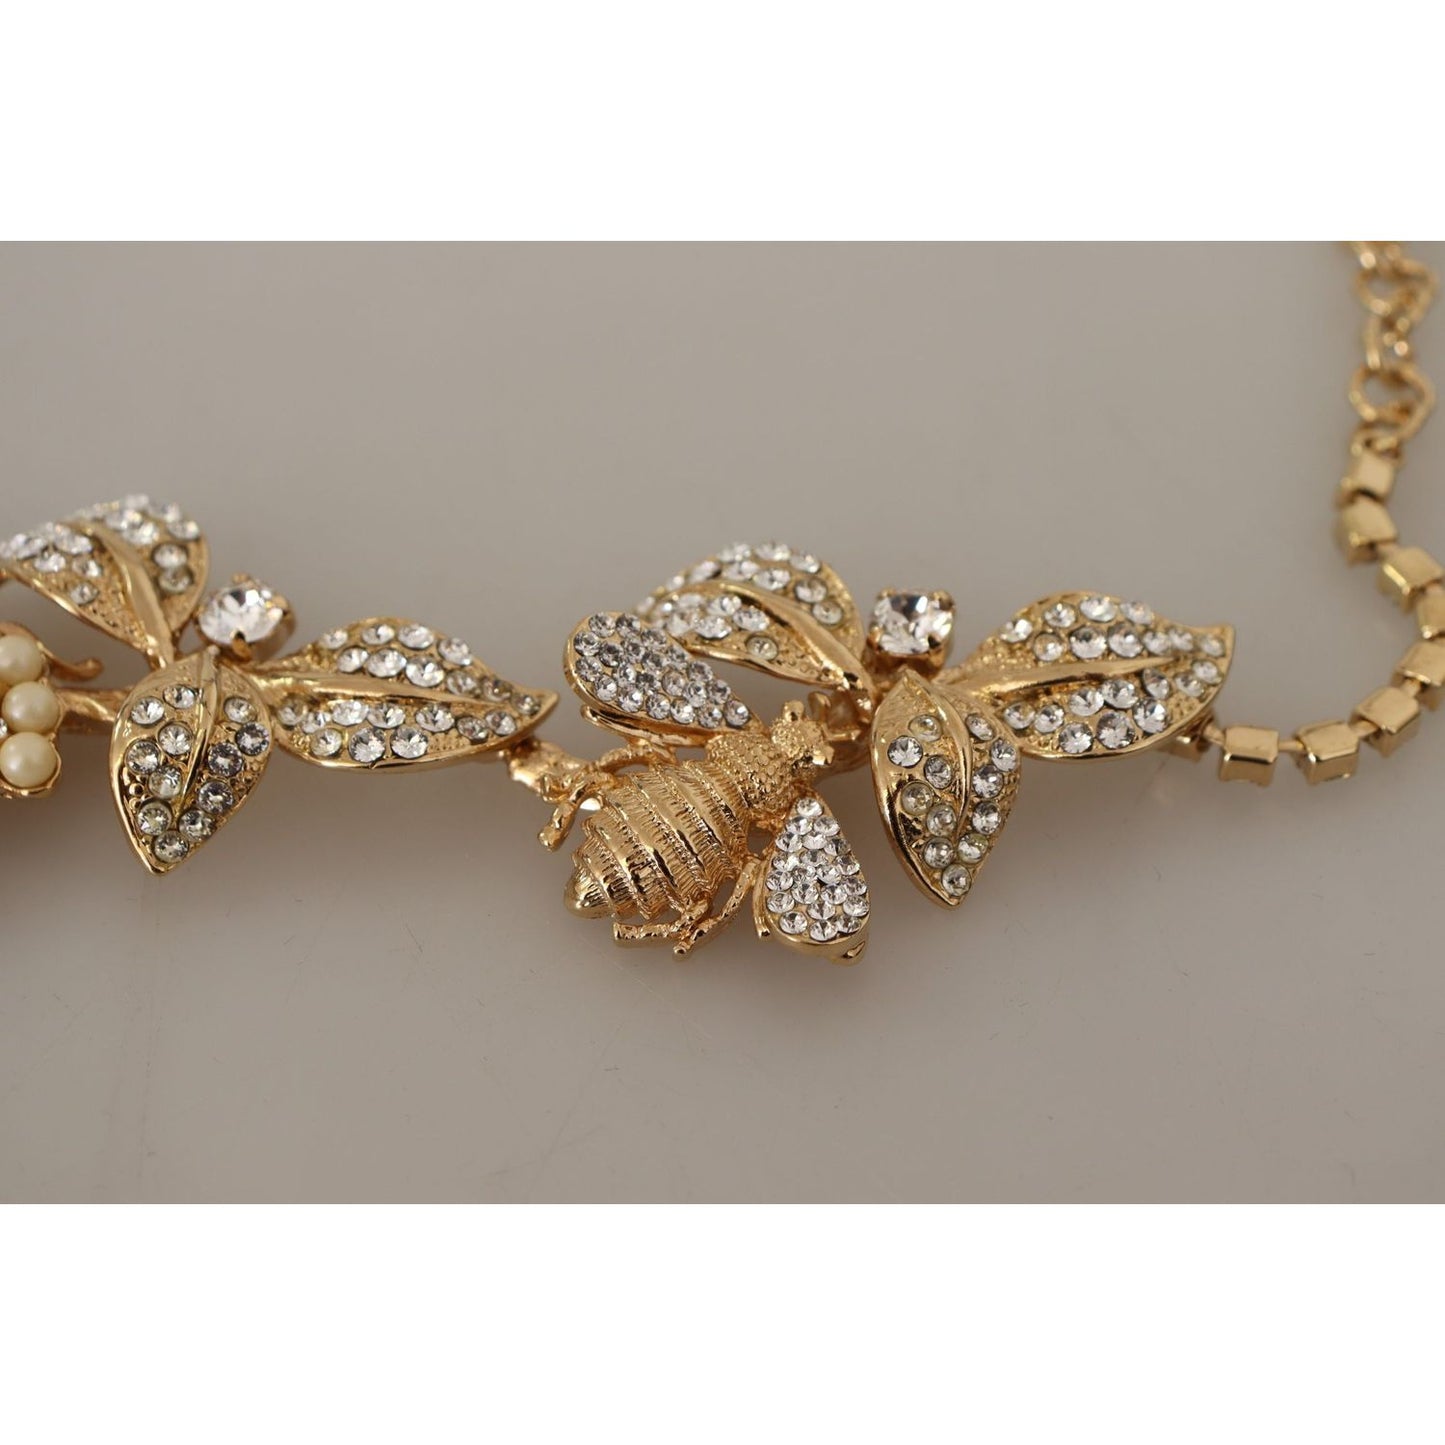 Dolce & Gabbana Elegant Sicily Floral Bug Statement Necklace gold-brass-floral-sicily-crystal-statement-necklace WOMAN NECKLACE IMG_1872-scaled-f7b1a36b-8e8.jpg